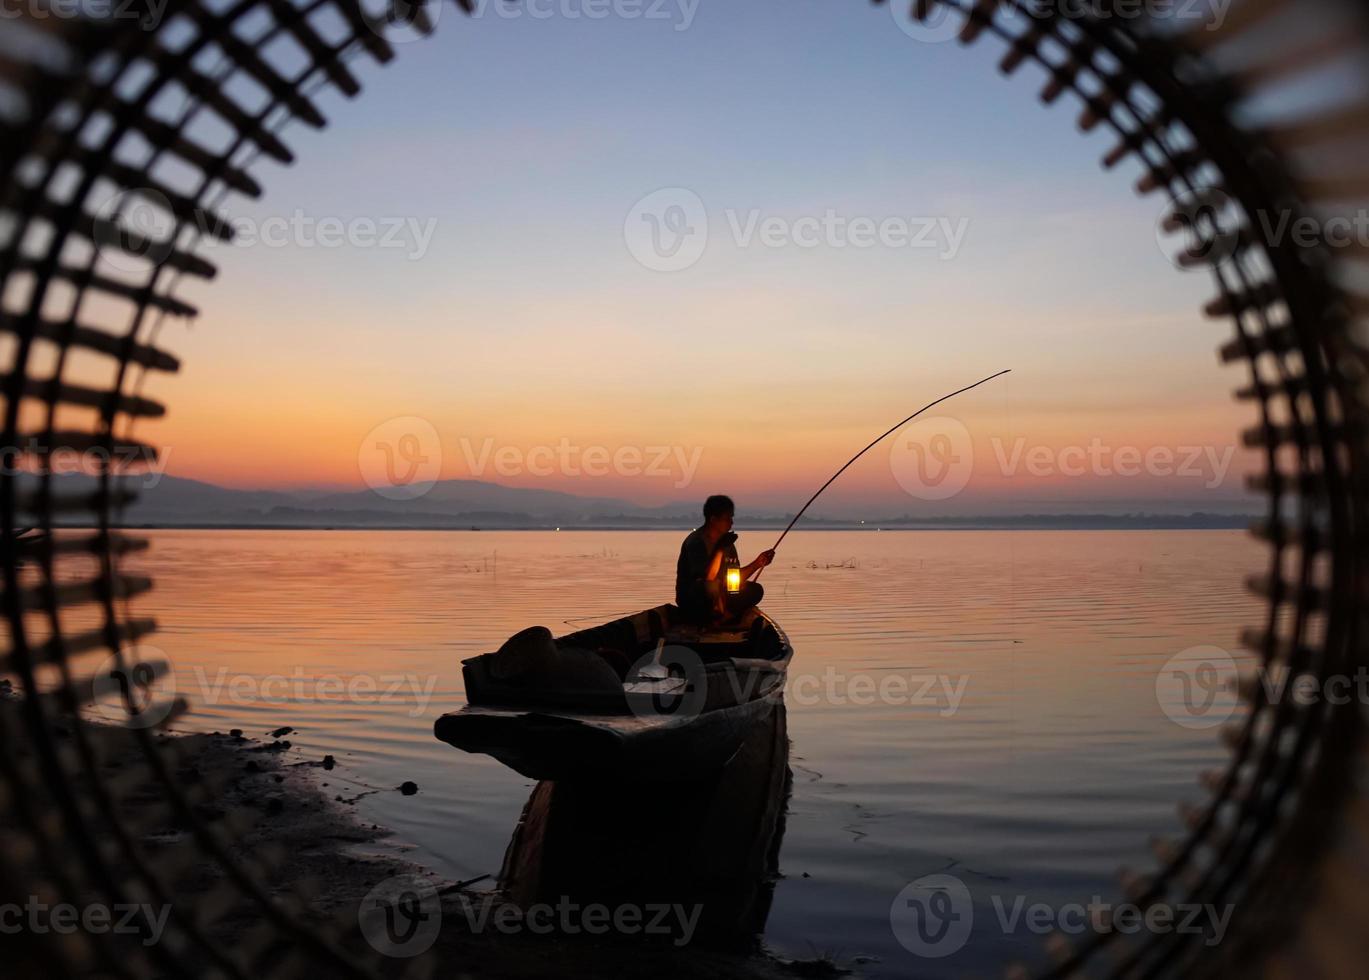 au bord du lac, un pêcheur asiatique assis sur un bateau et utilisant une canne à pêche pour attraper du poisson au lever du soleil photo